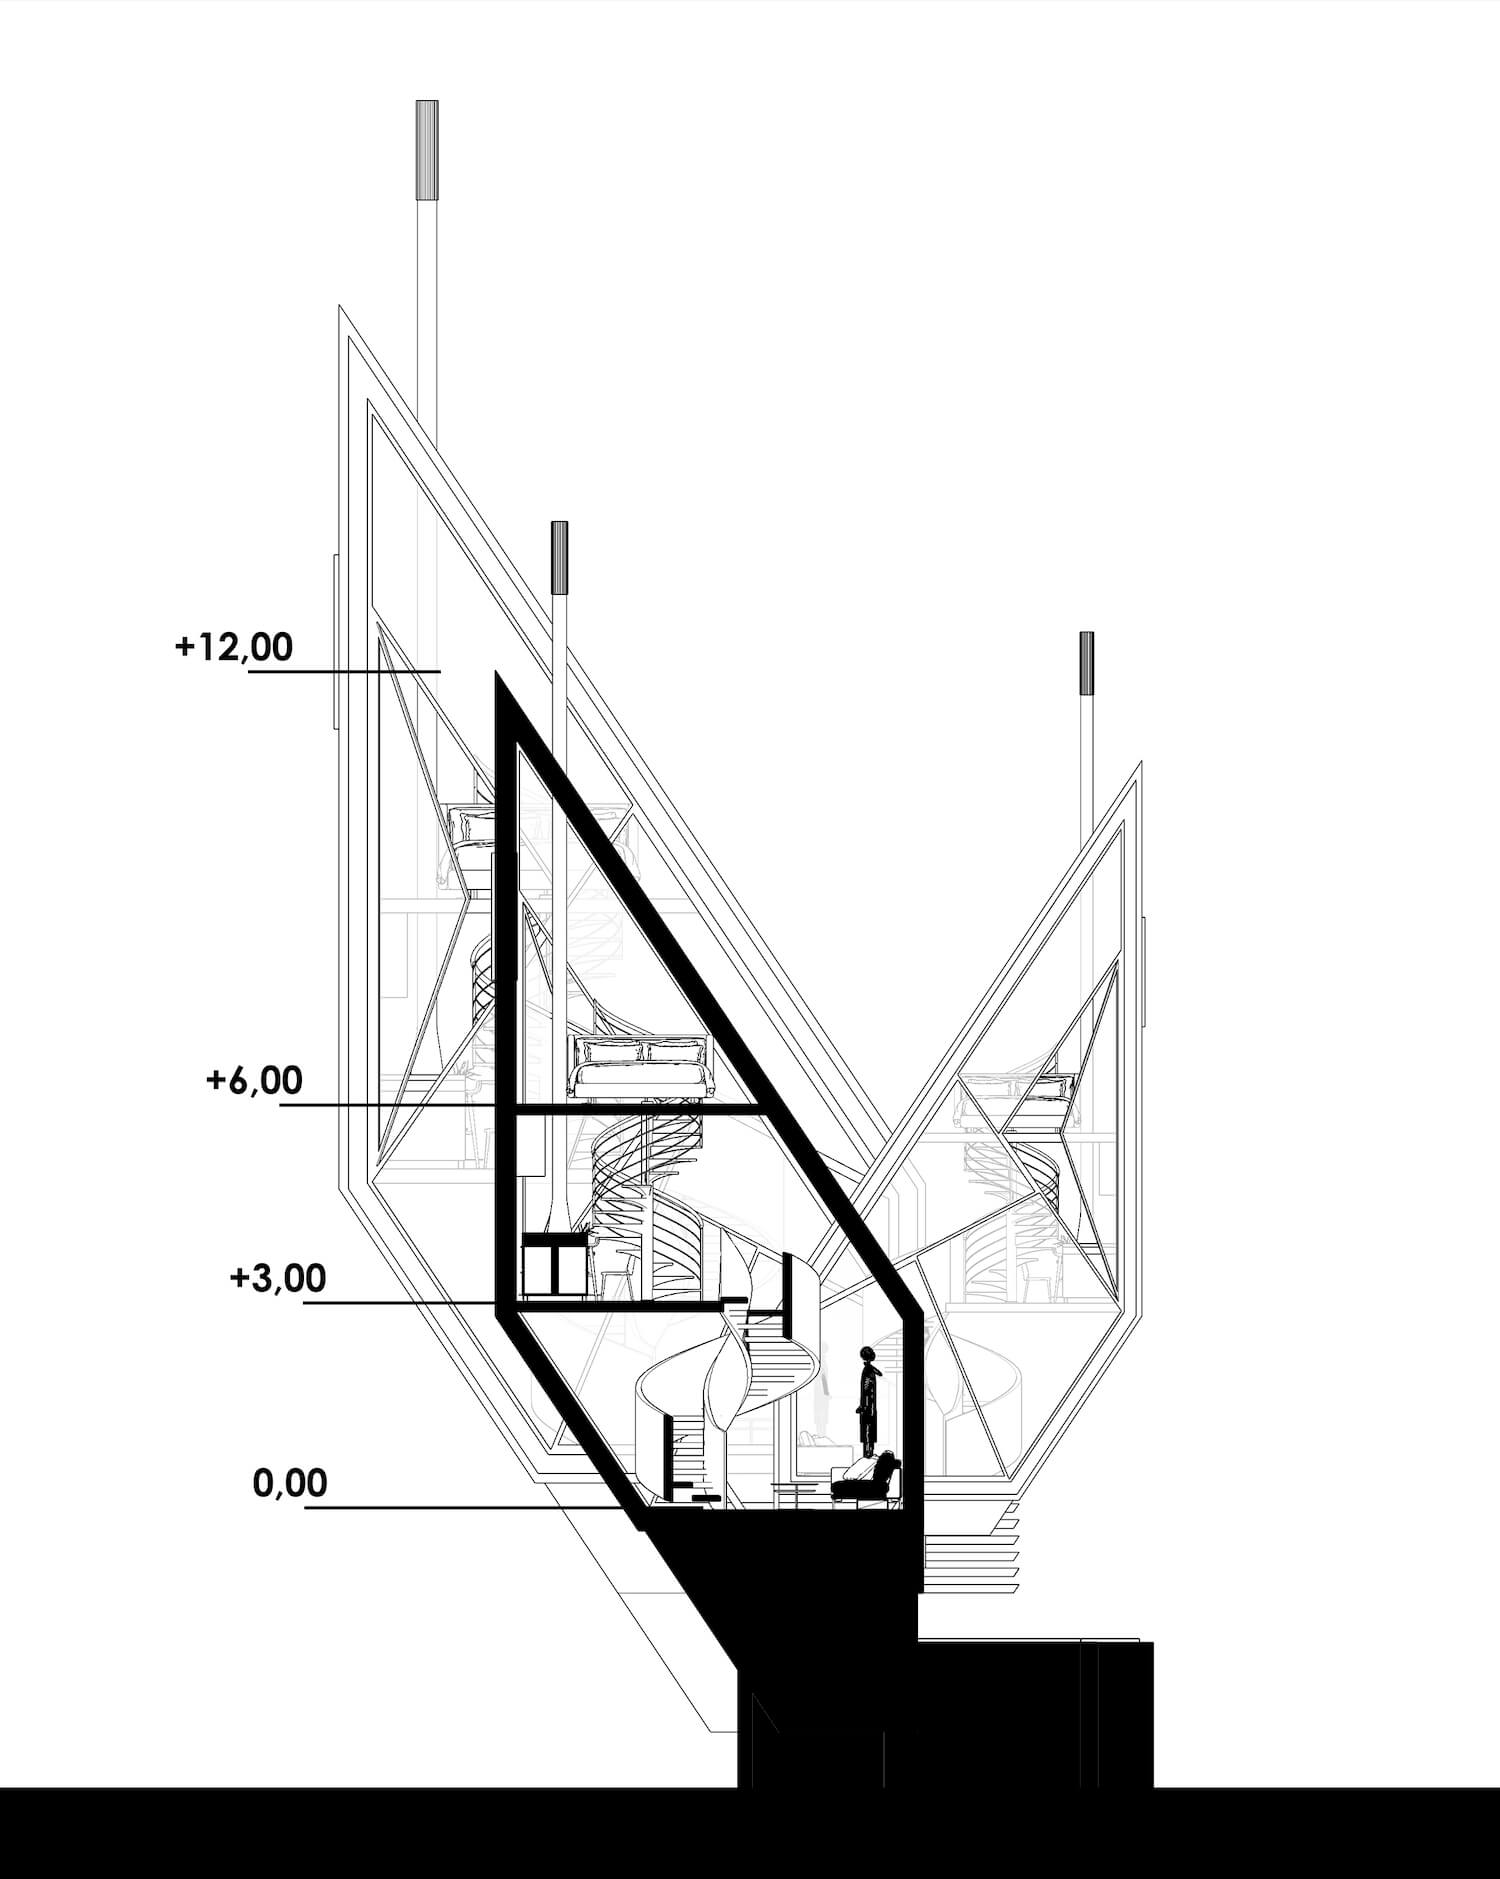 module modern house plan